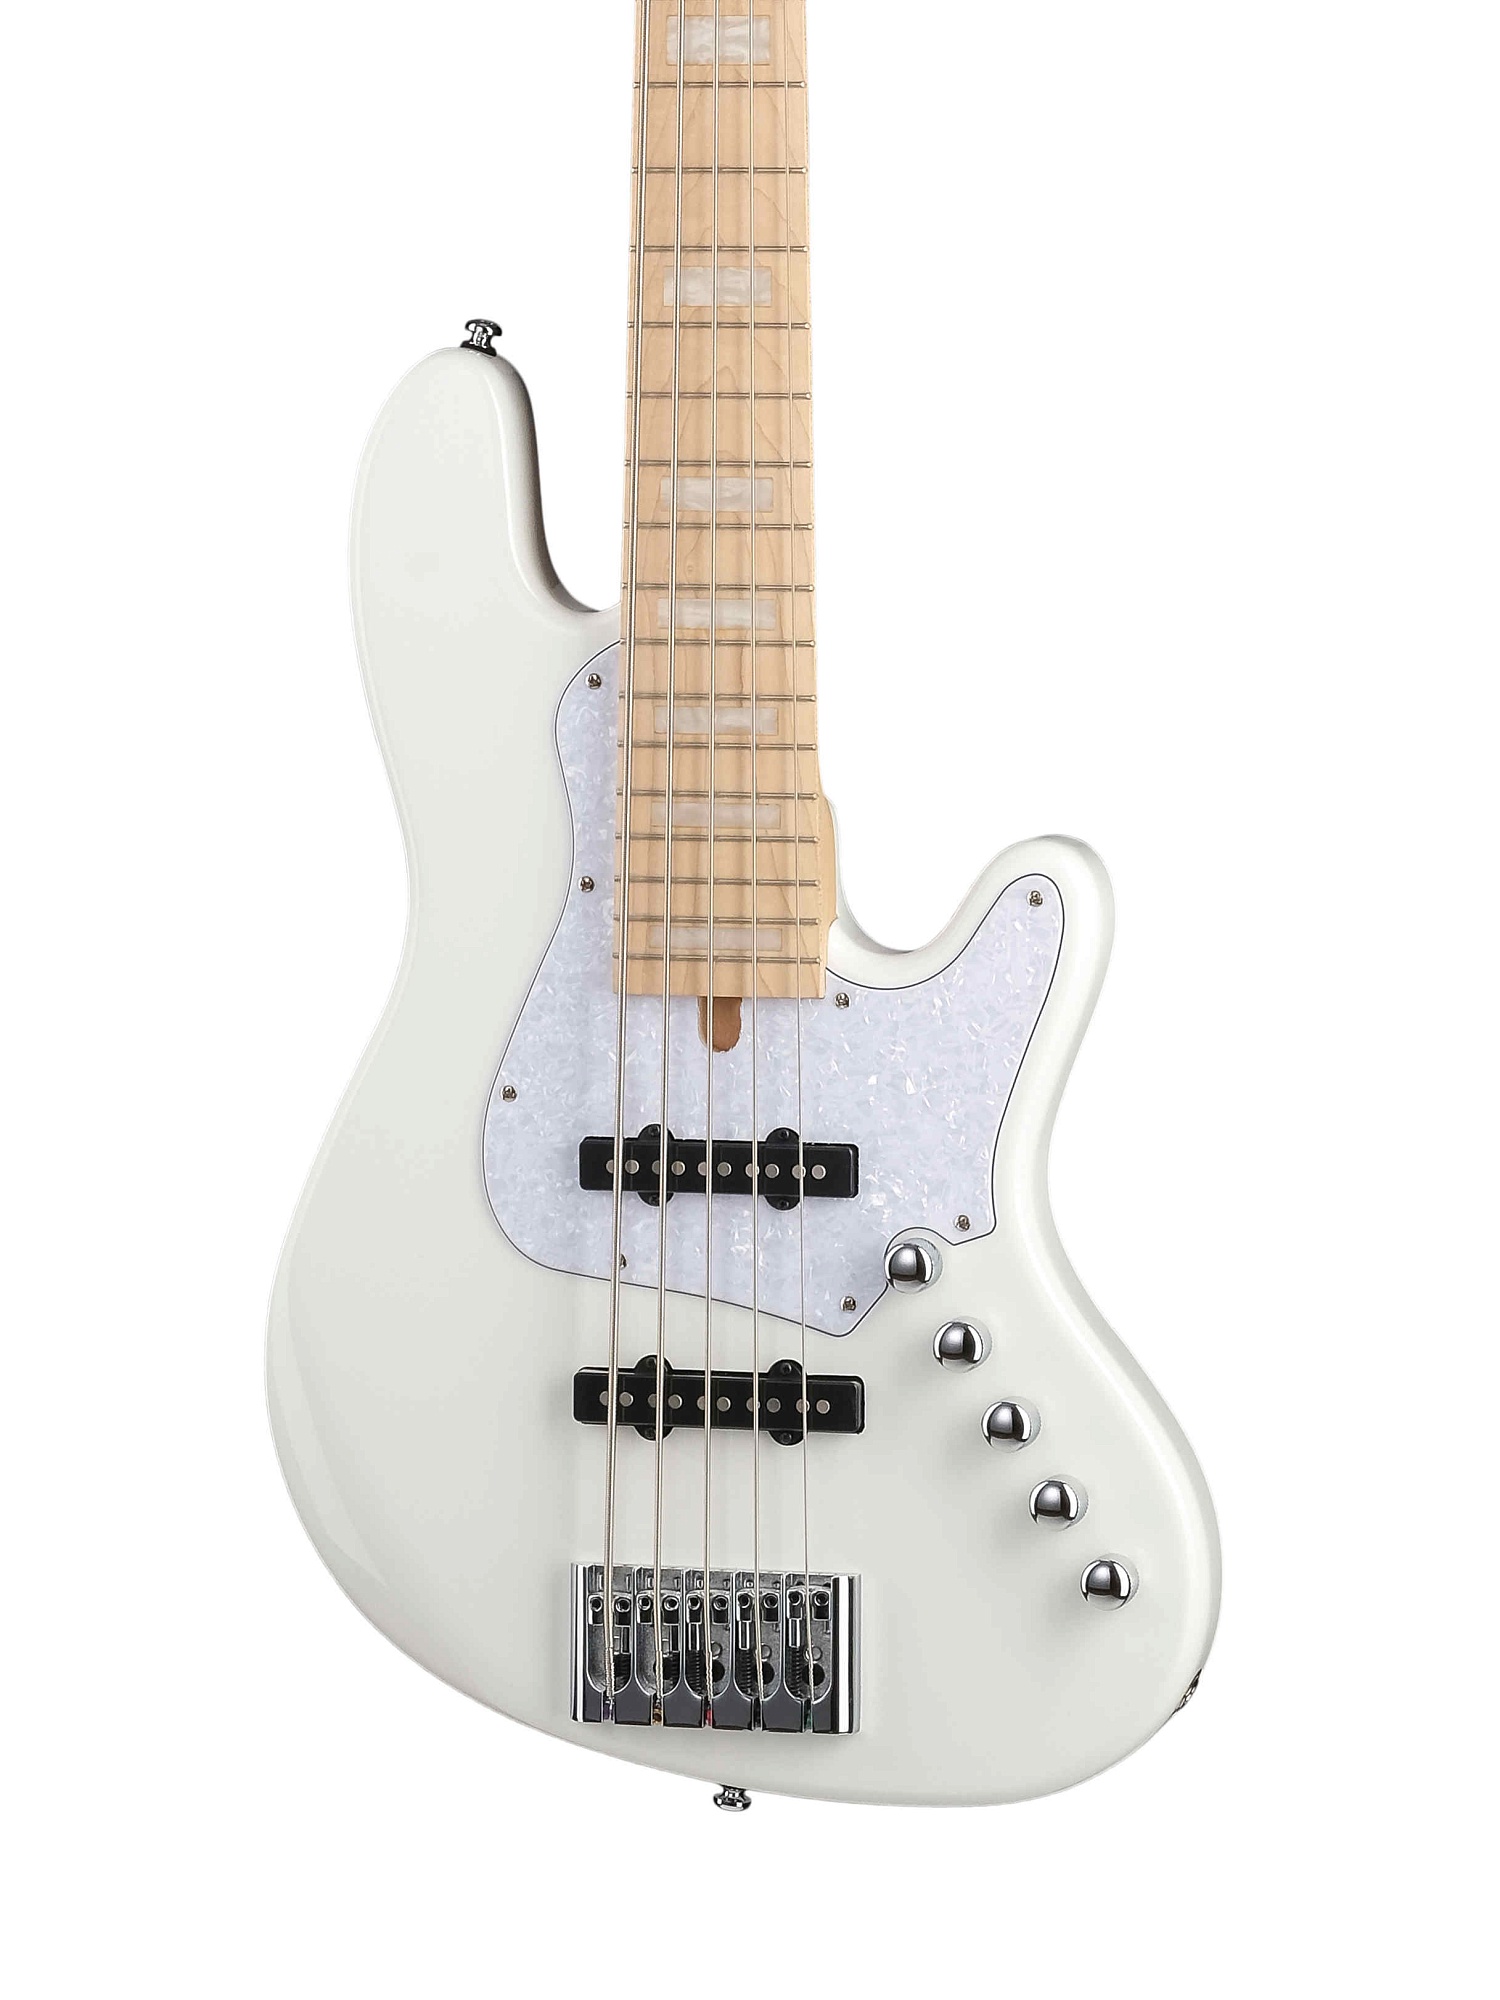 NJS5-WHT Elrick NJS Series Бас-гитара 5-струнная, белая, с чехлом, Cort купить в prostore.me